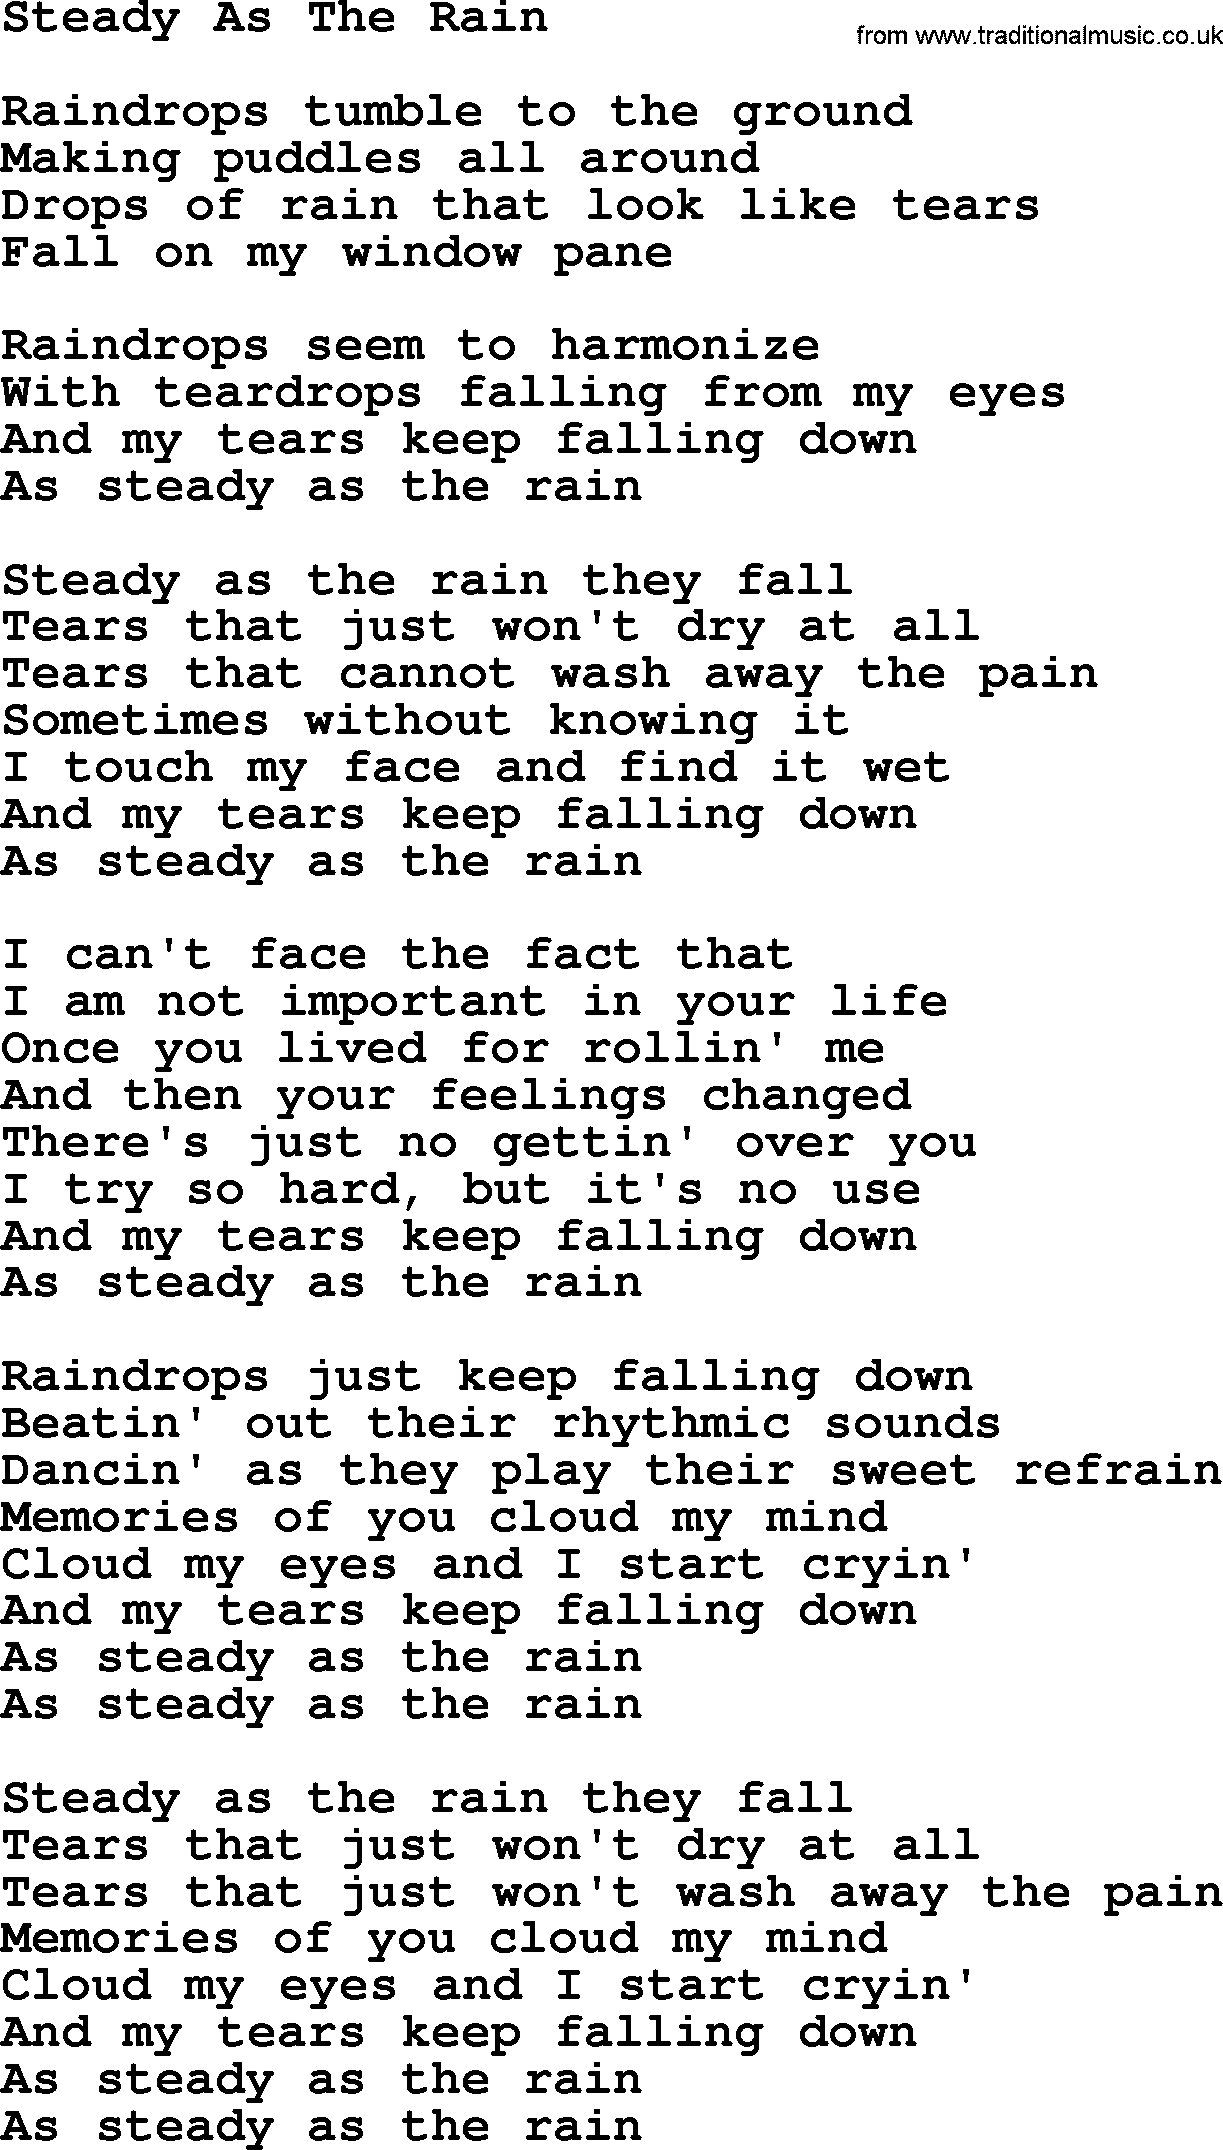 Dolly Parton song Steady As The Rain.txt lyrics